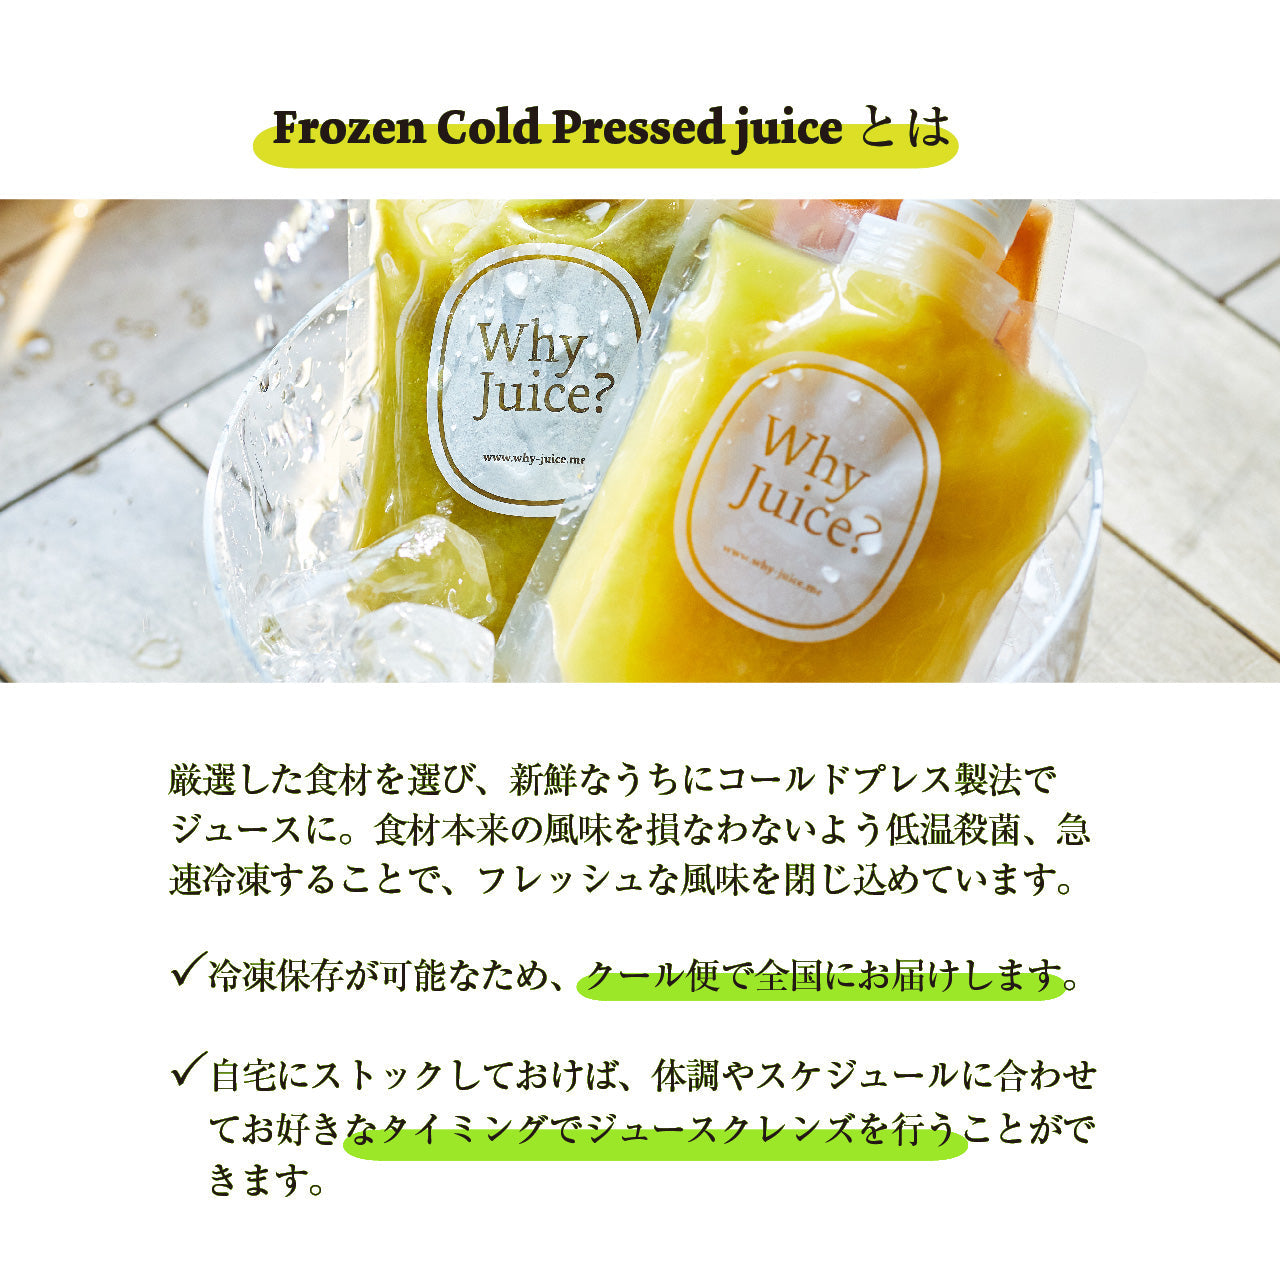 【初めてのWhy Juice?お試し】Frozen Cold Pressed Juice3本セット【ジュースクレンズ】